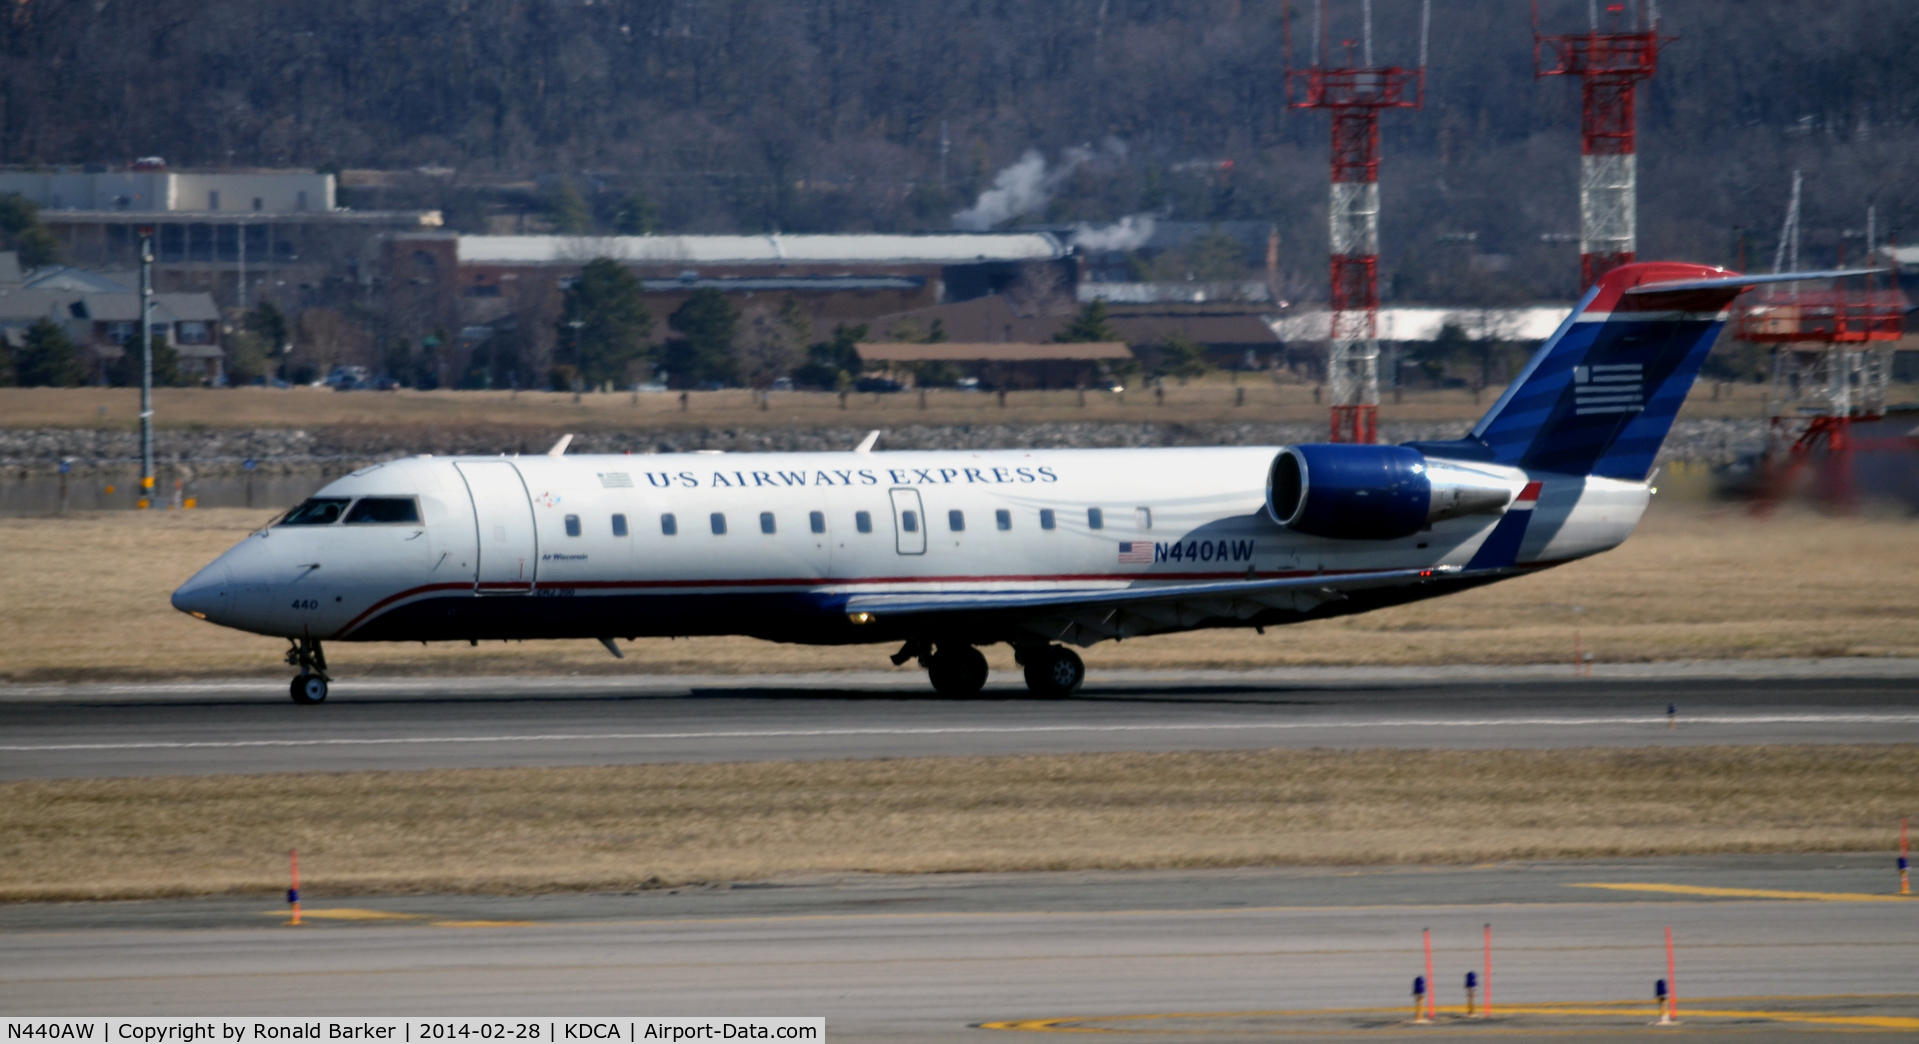 N440AW, 2003 Bombardier CRJ-200LR (CL-600-2B19) C/N 7766, Takeoff roll National